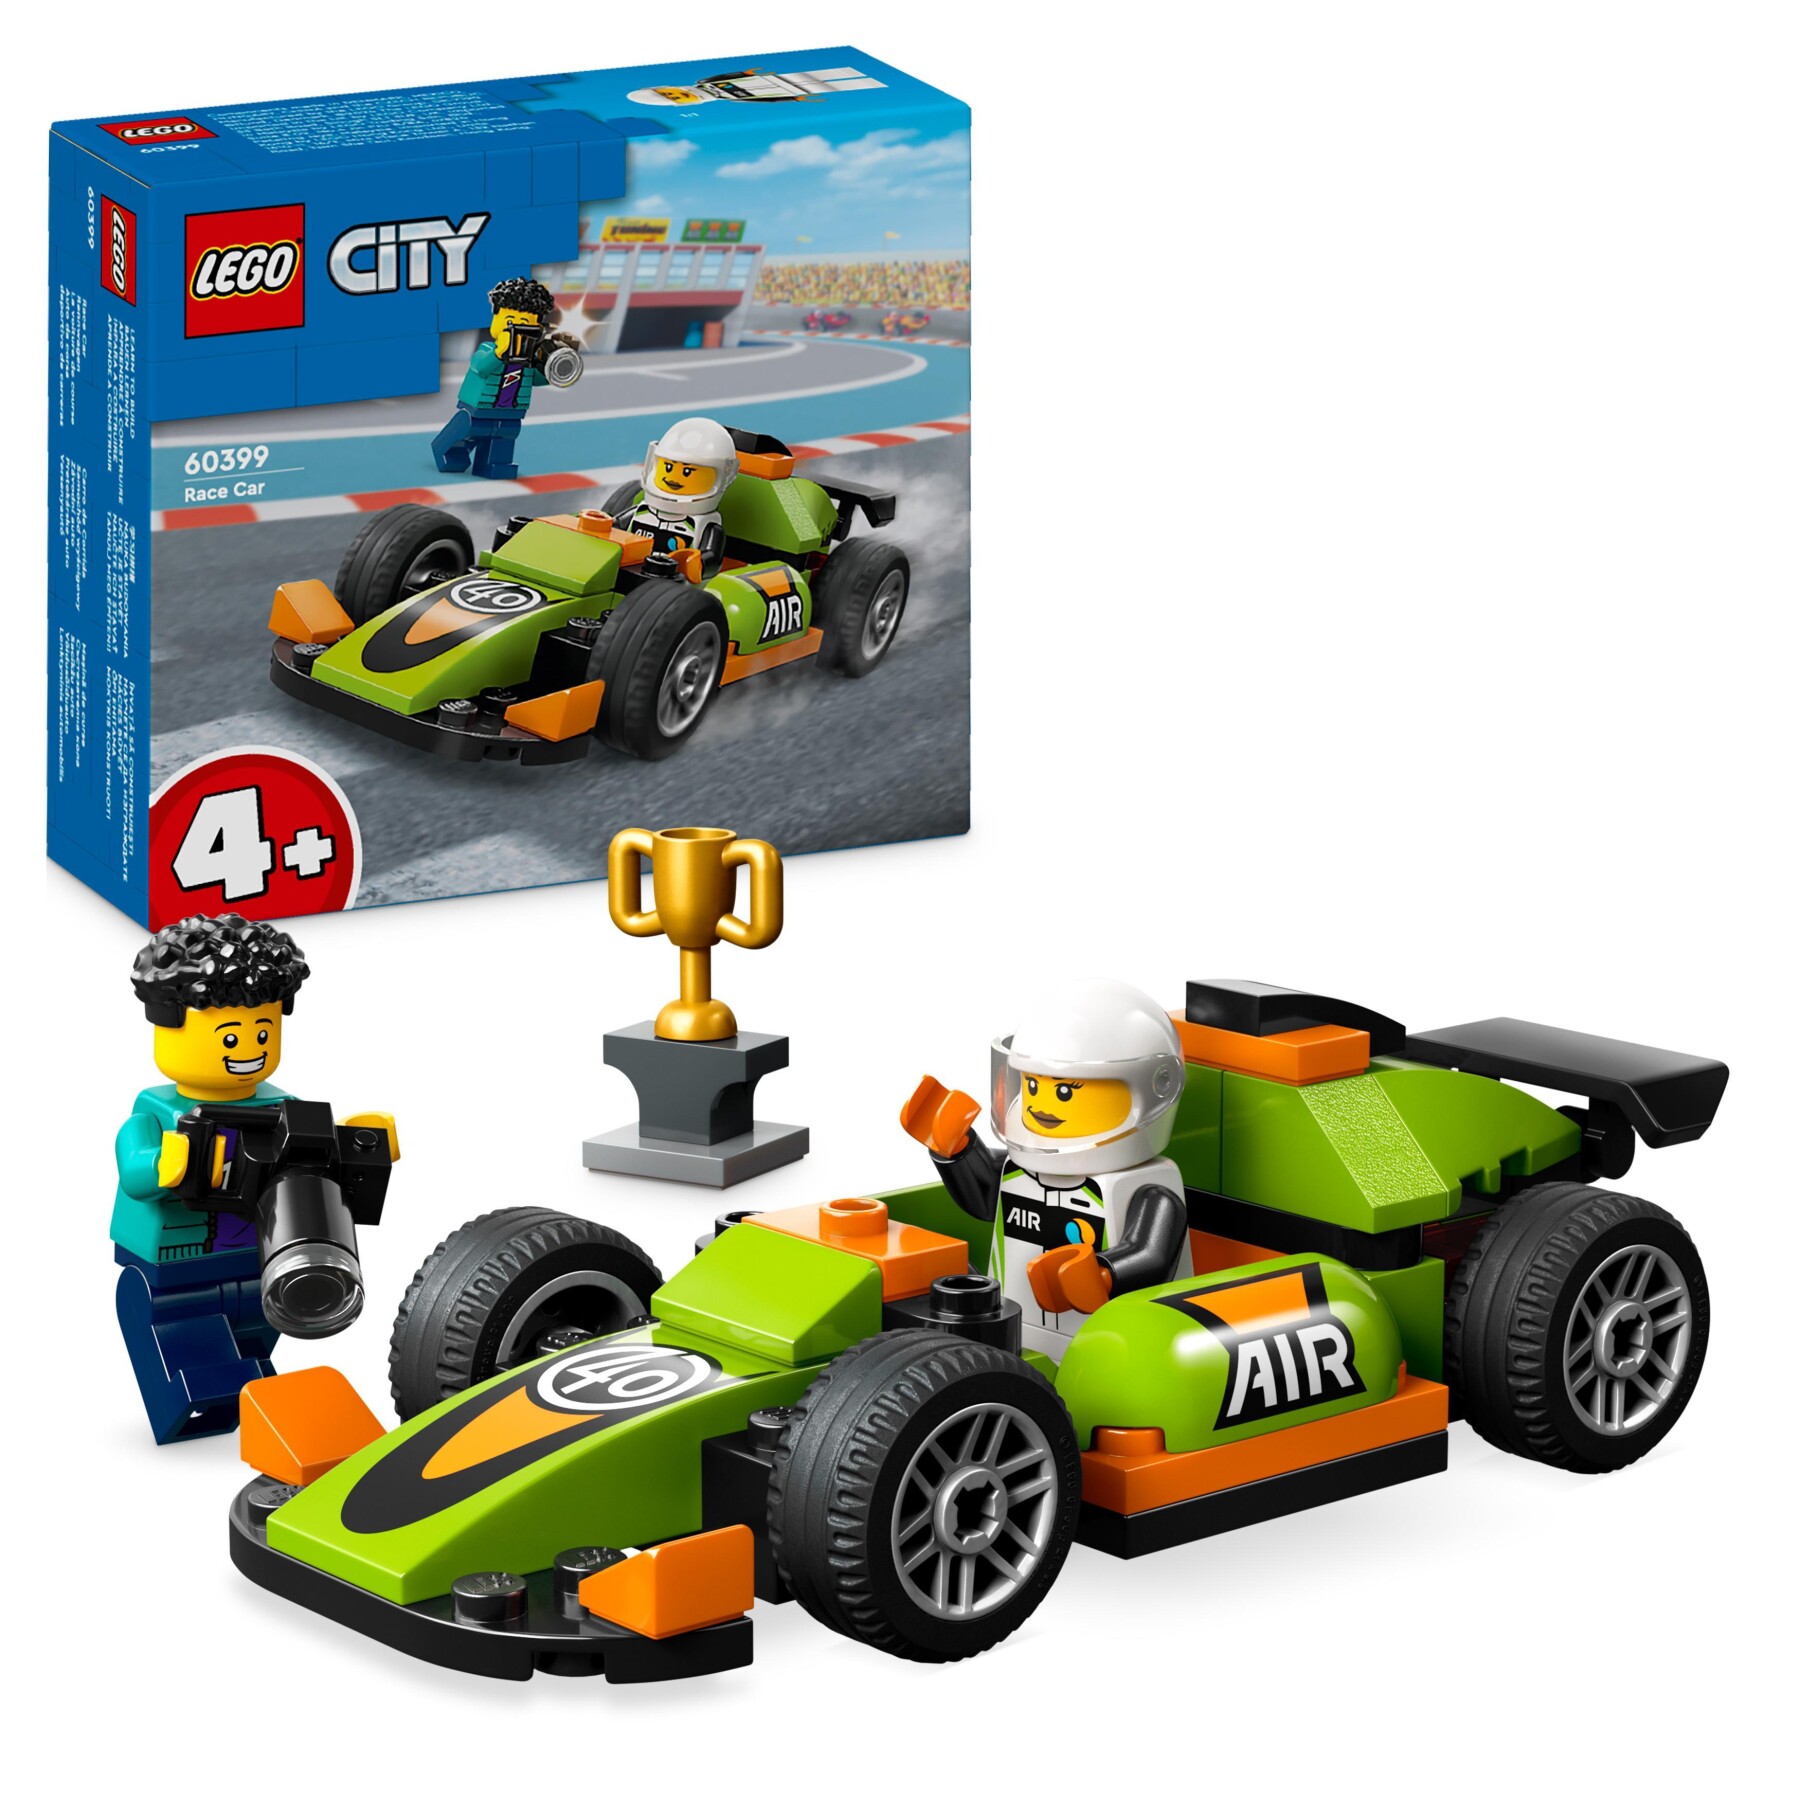 Lego city 60399 auto da corsa verde, macchina giocattolo per bambini di 4+ anni, modellino da costruire di veicolo formula 1